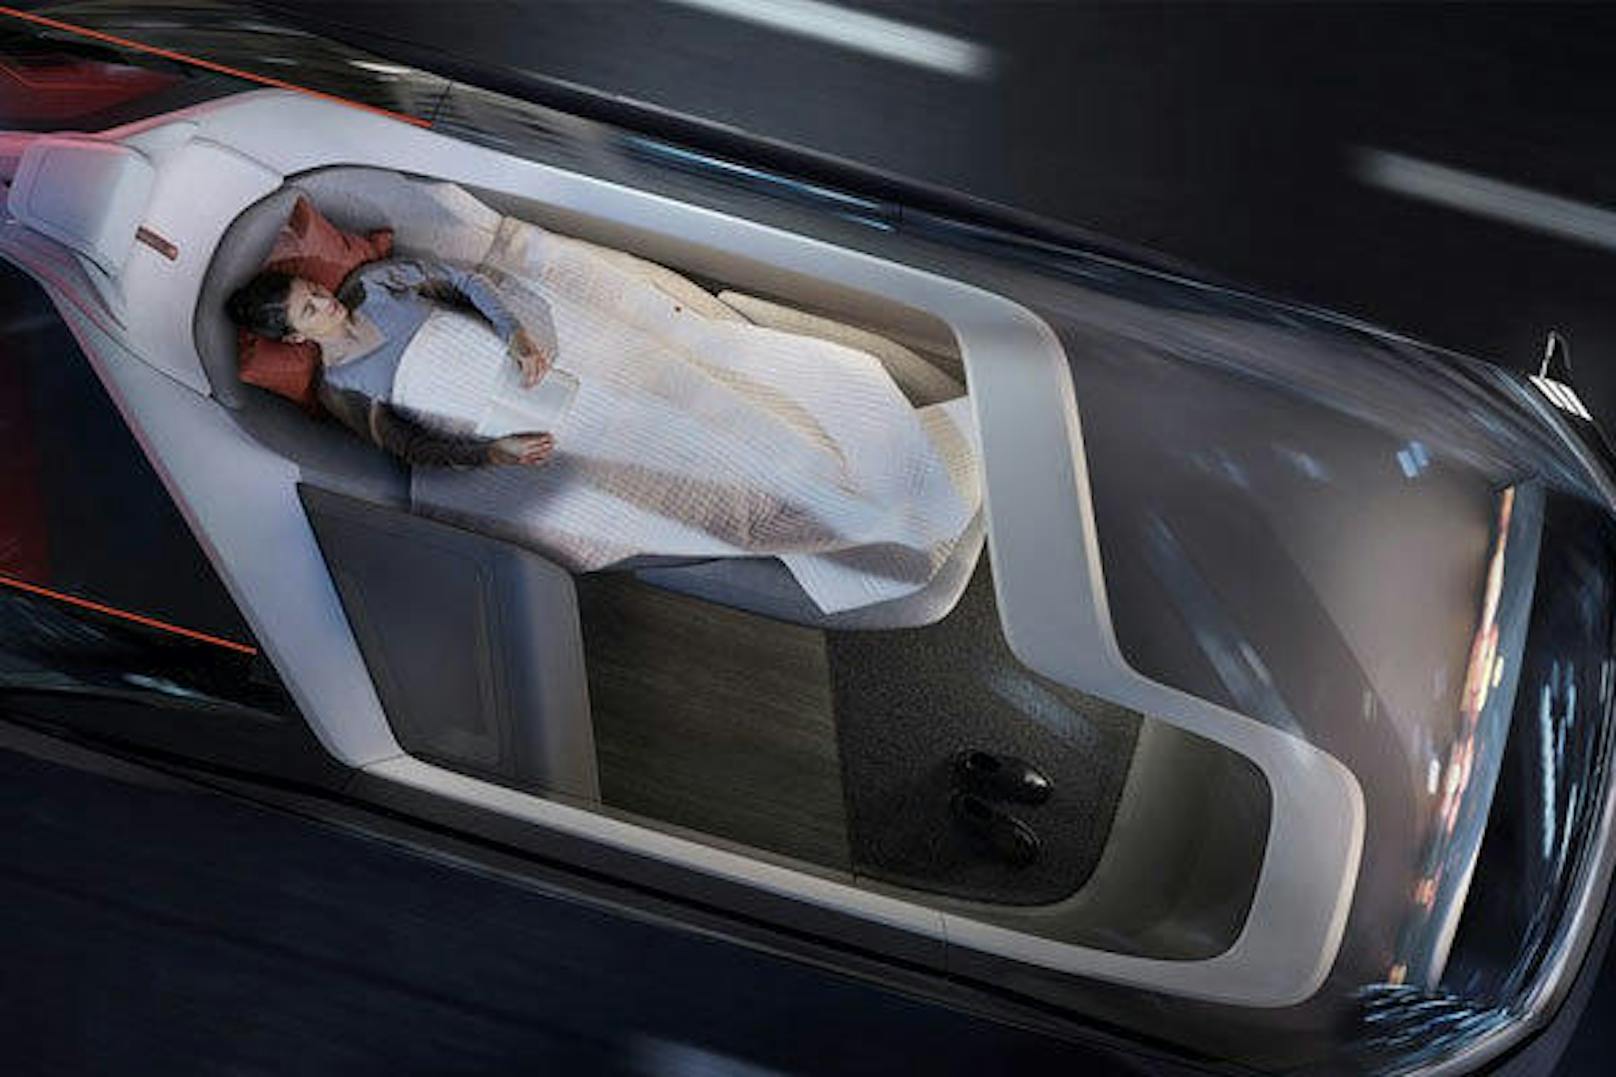 Volvos Konzept 360c zeigt vier Einsatzmöglichkeiten autonomer Fahrzeuge, die die Art und Weise des Reisens neu definieren sollen: eine Schlafumgebung, ein mobiles Büro, ein Wohnzimmer und einen Unterhaltungsraum.